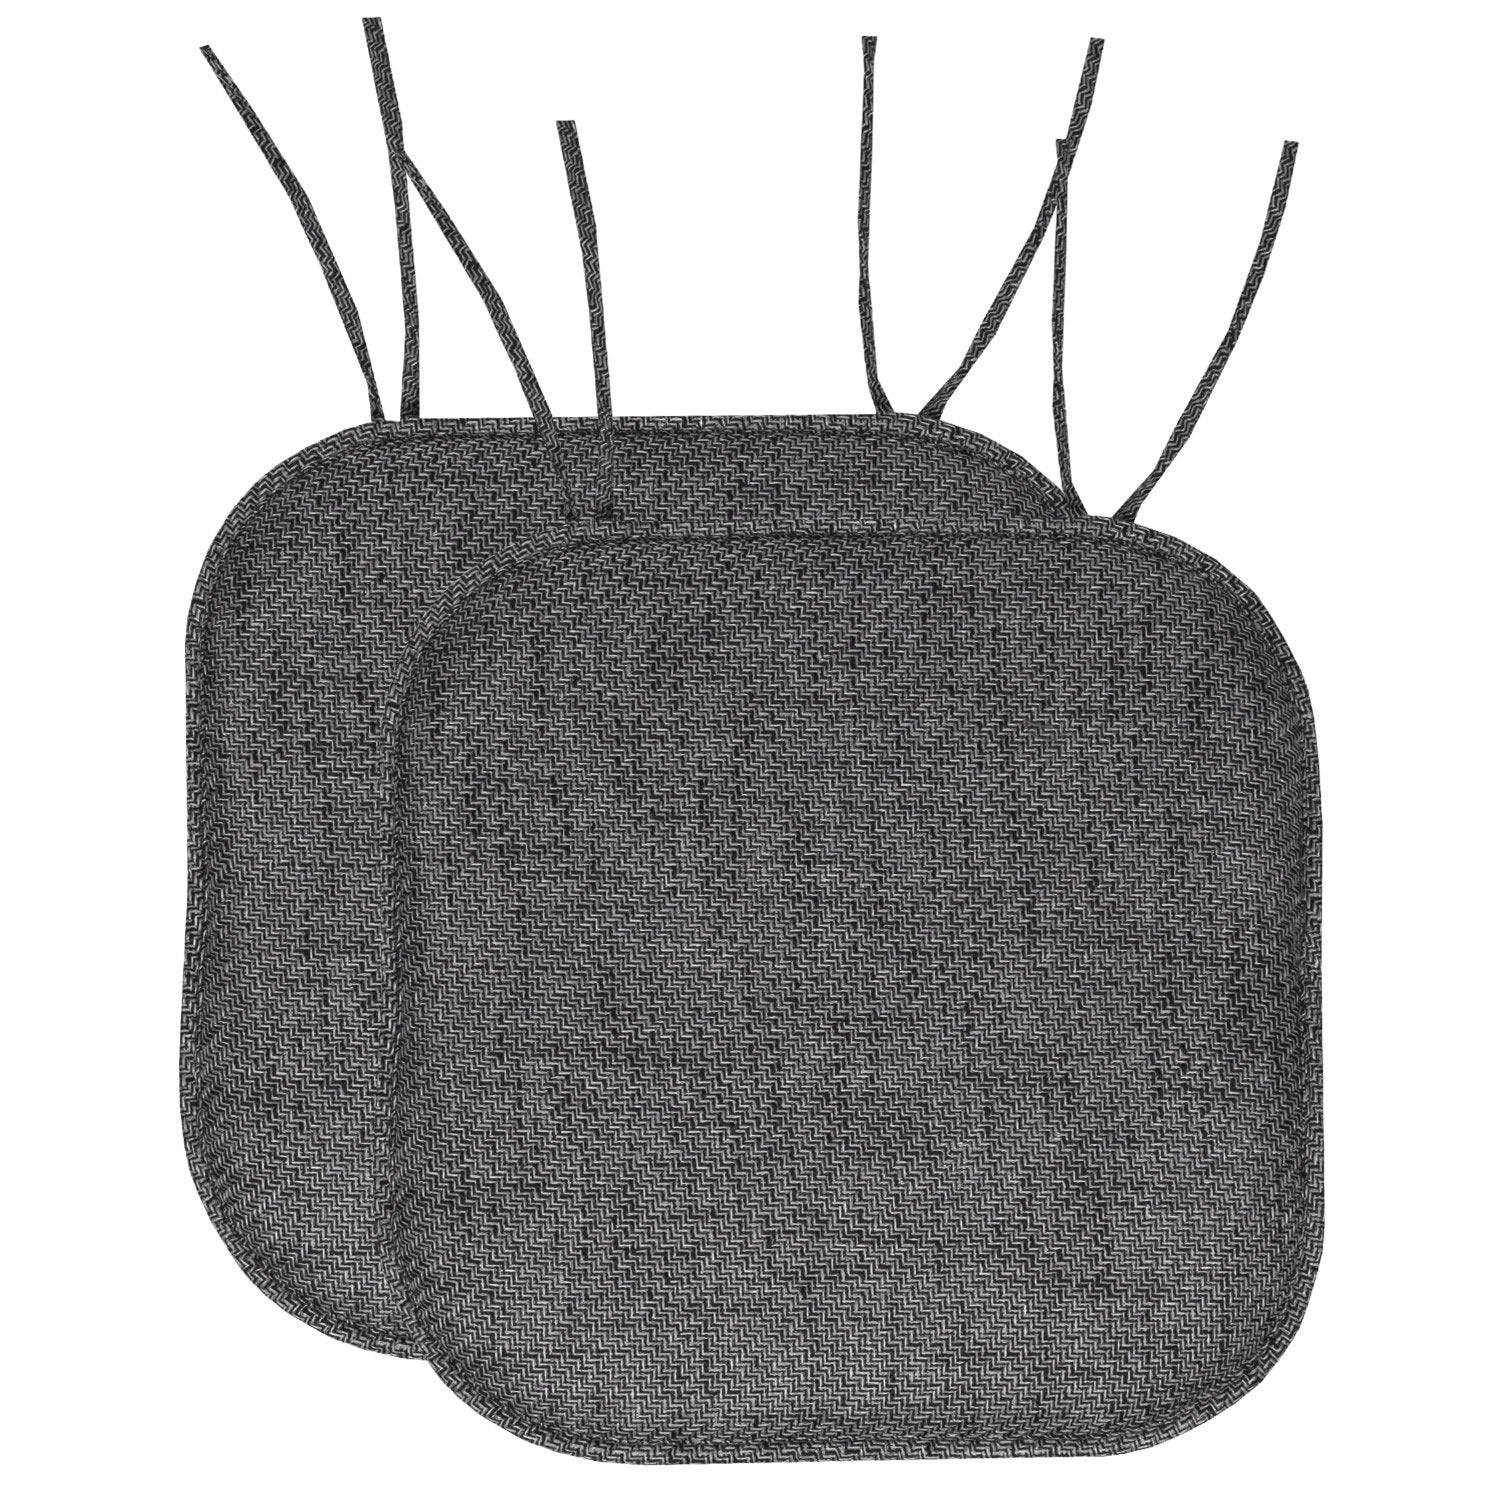 Herringbone Chair Cushion Set with Ties Black 2-Pack